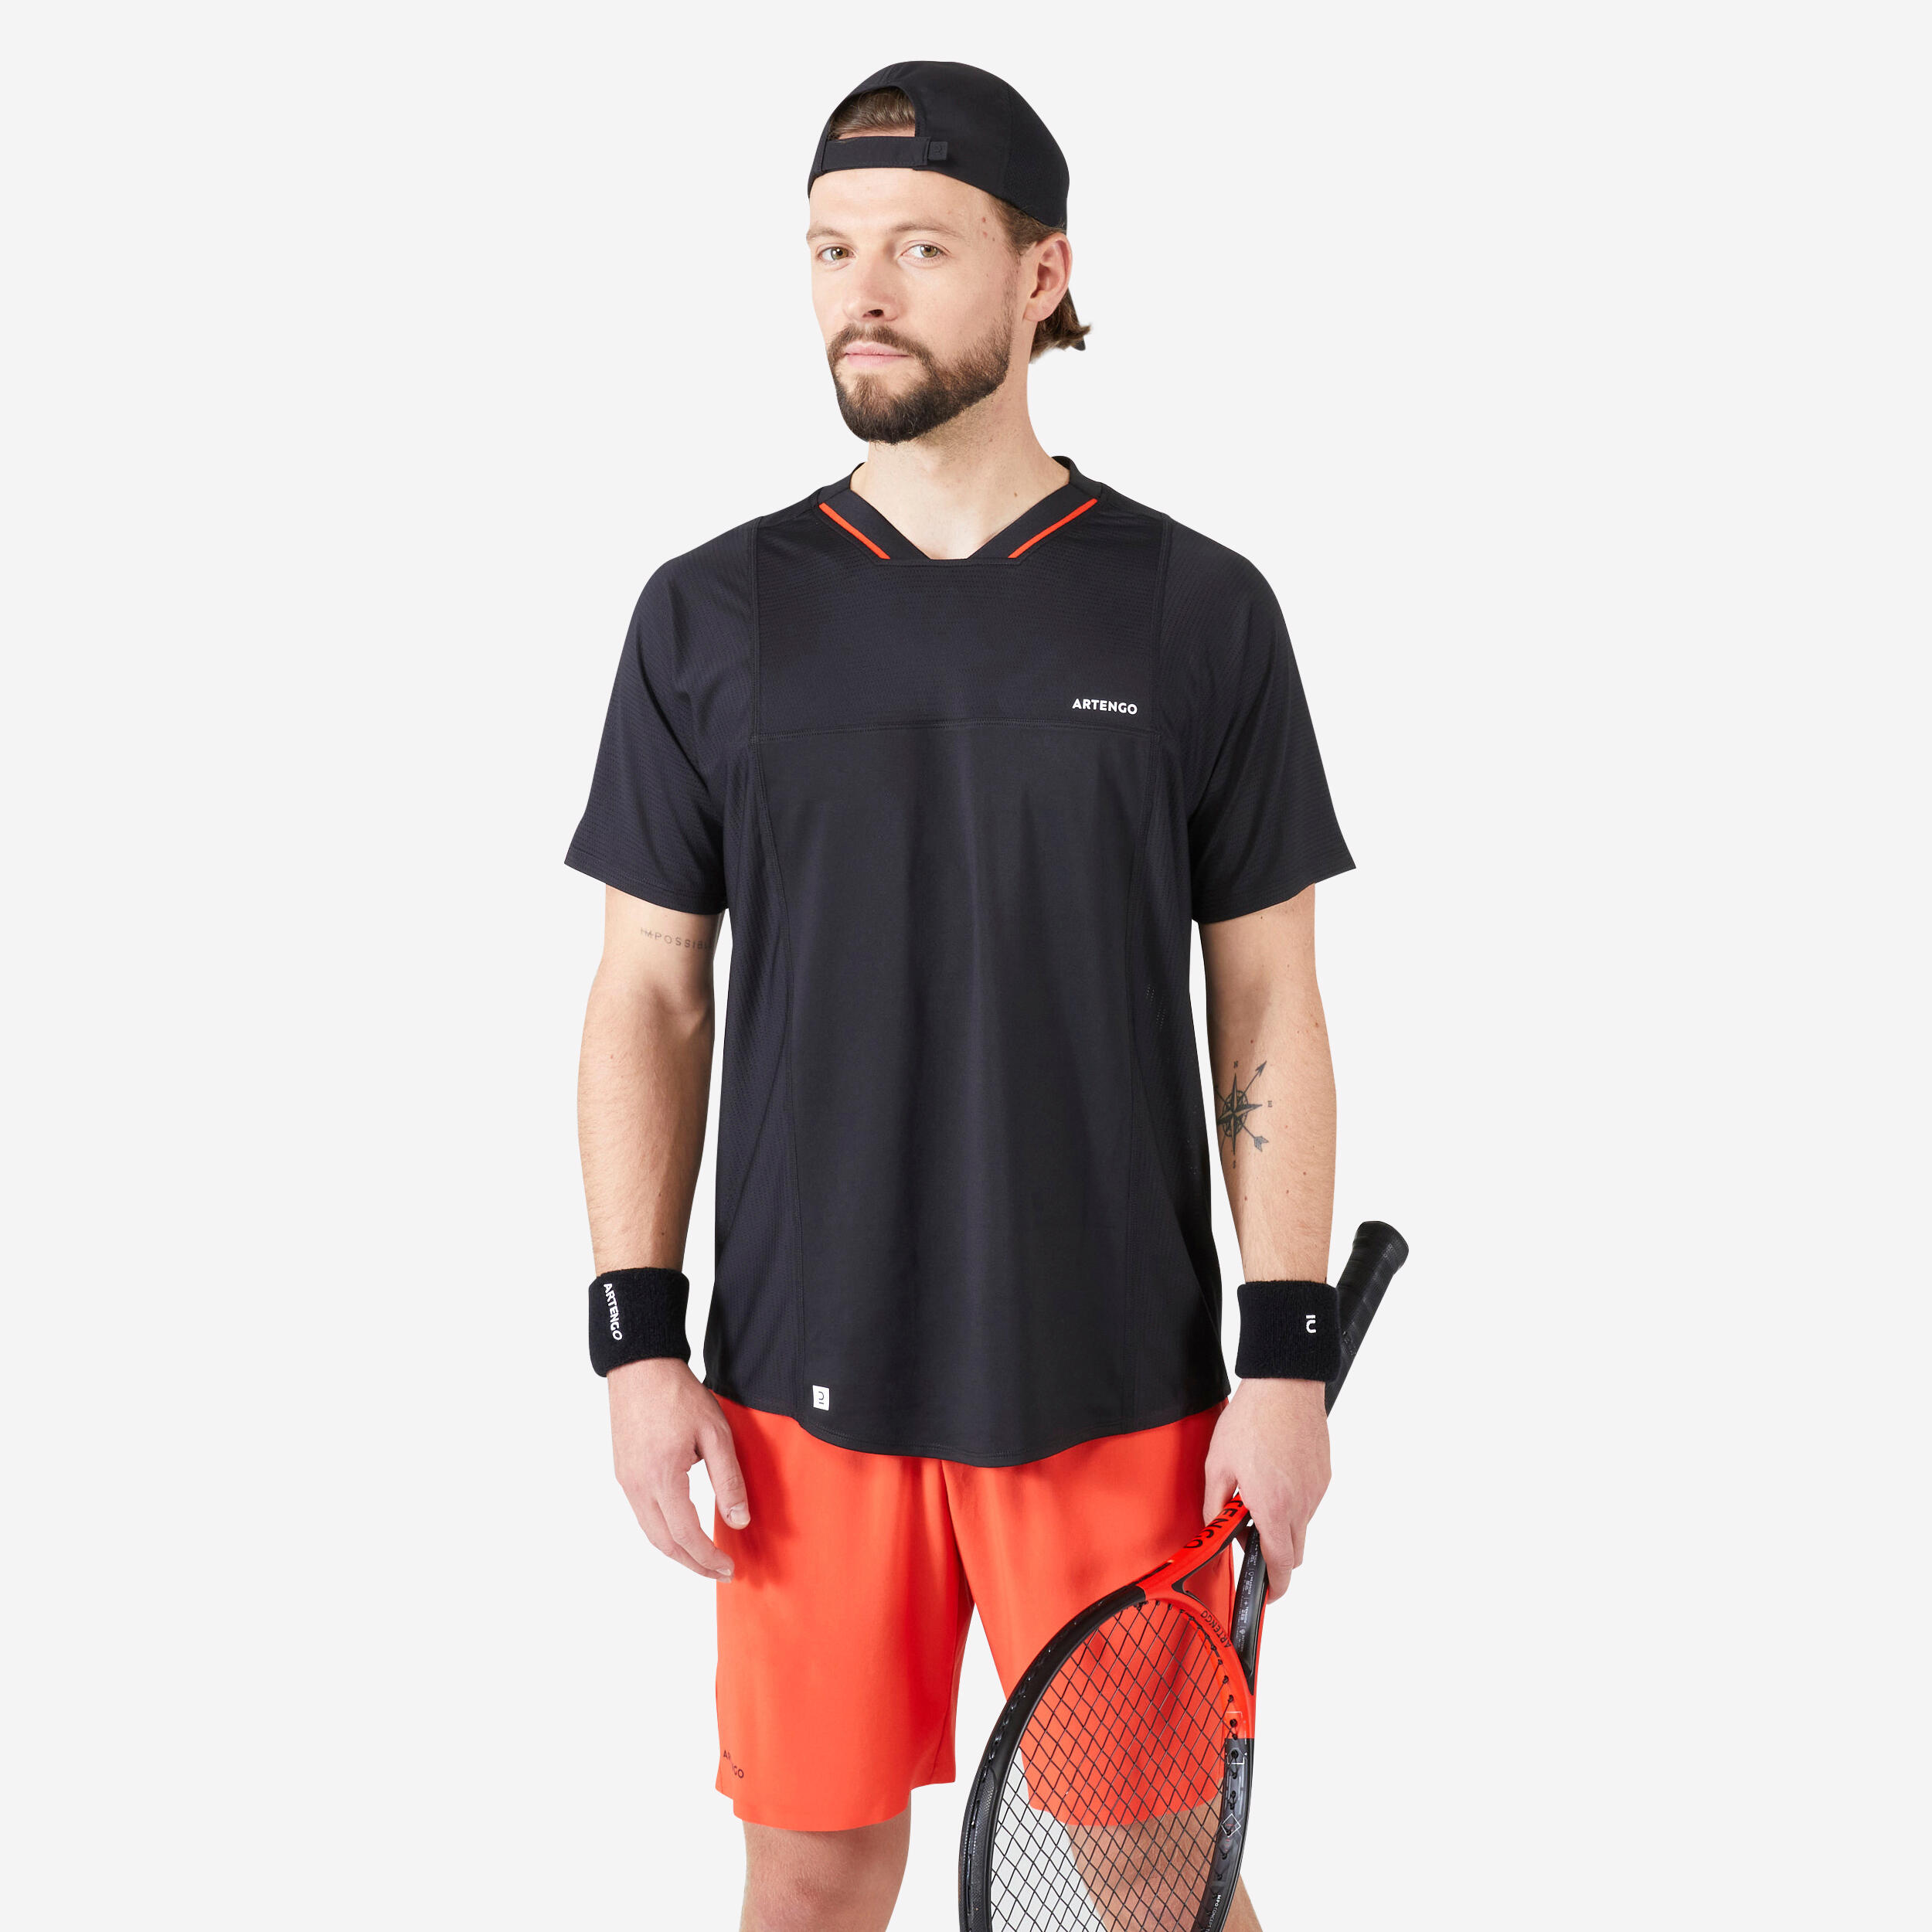 Men's Tennis Short-Sleeved T-Shirt Dry VN - Black/Red 1/5